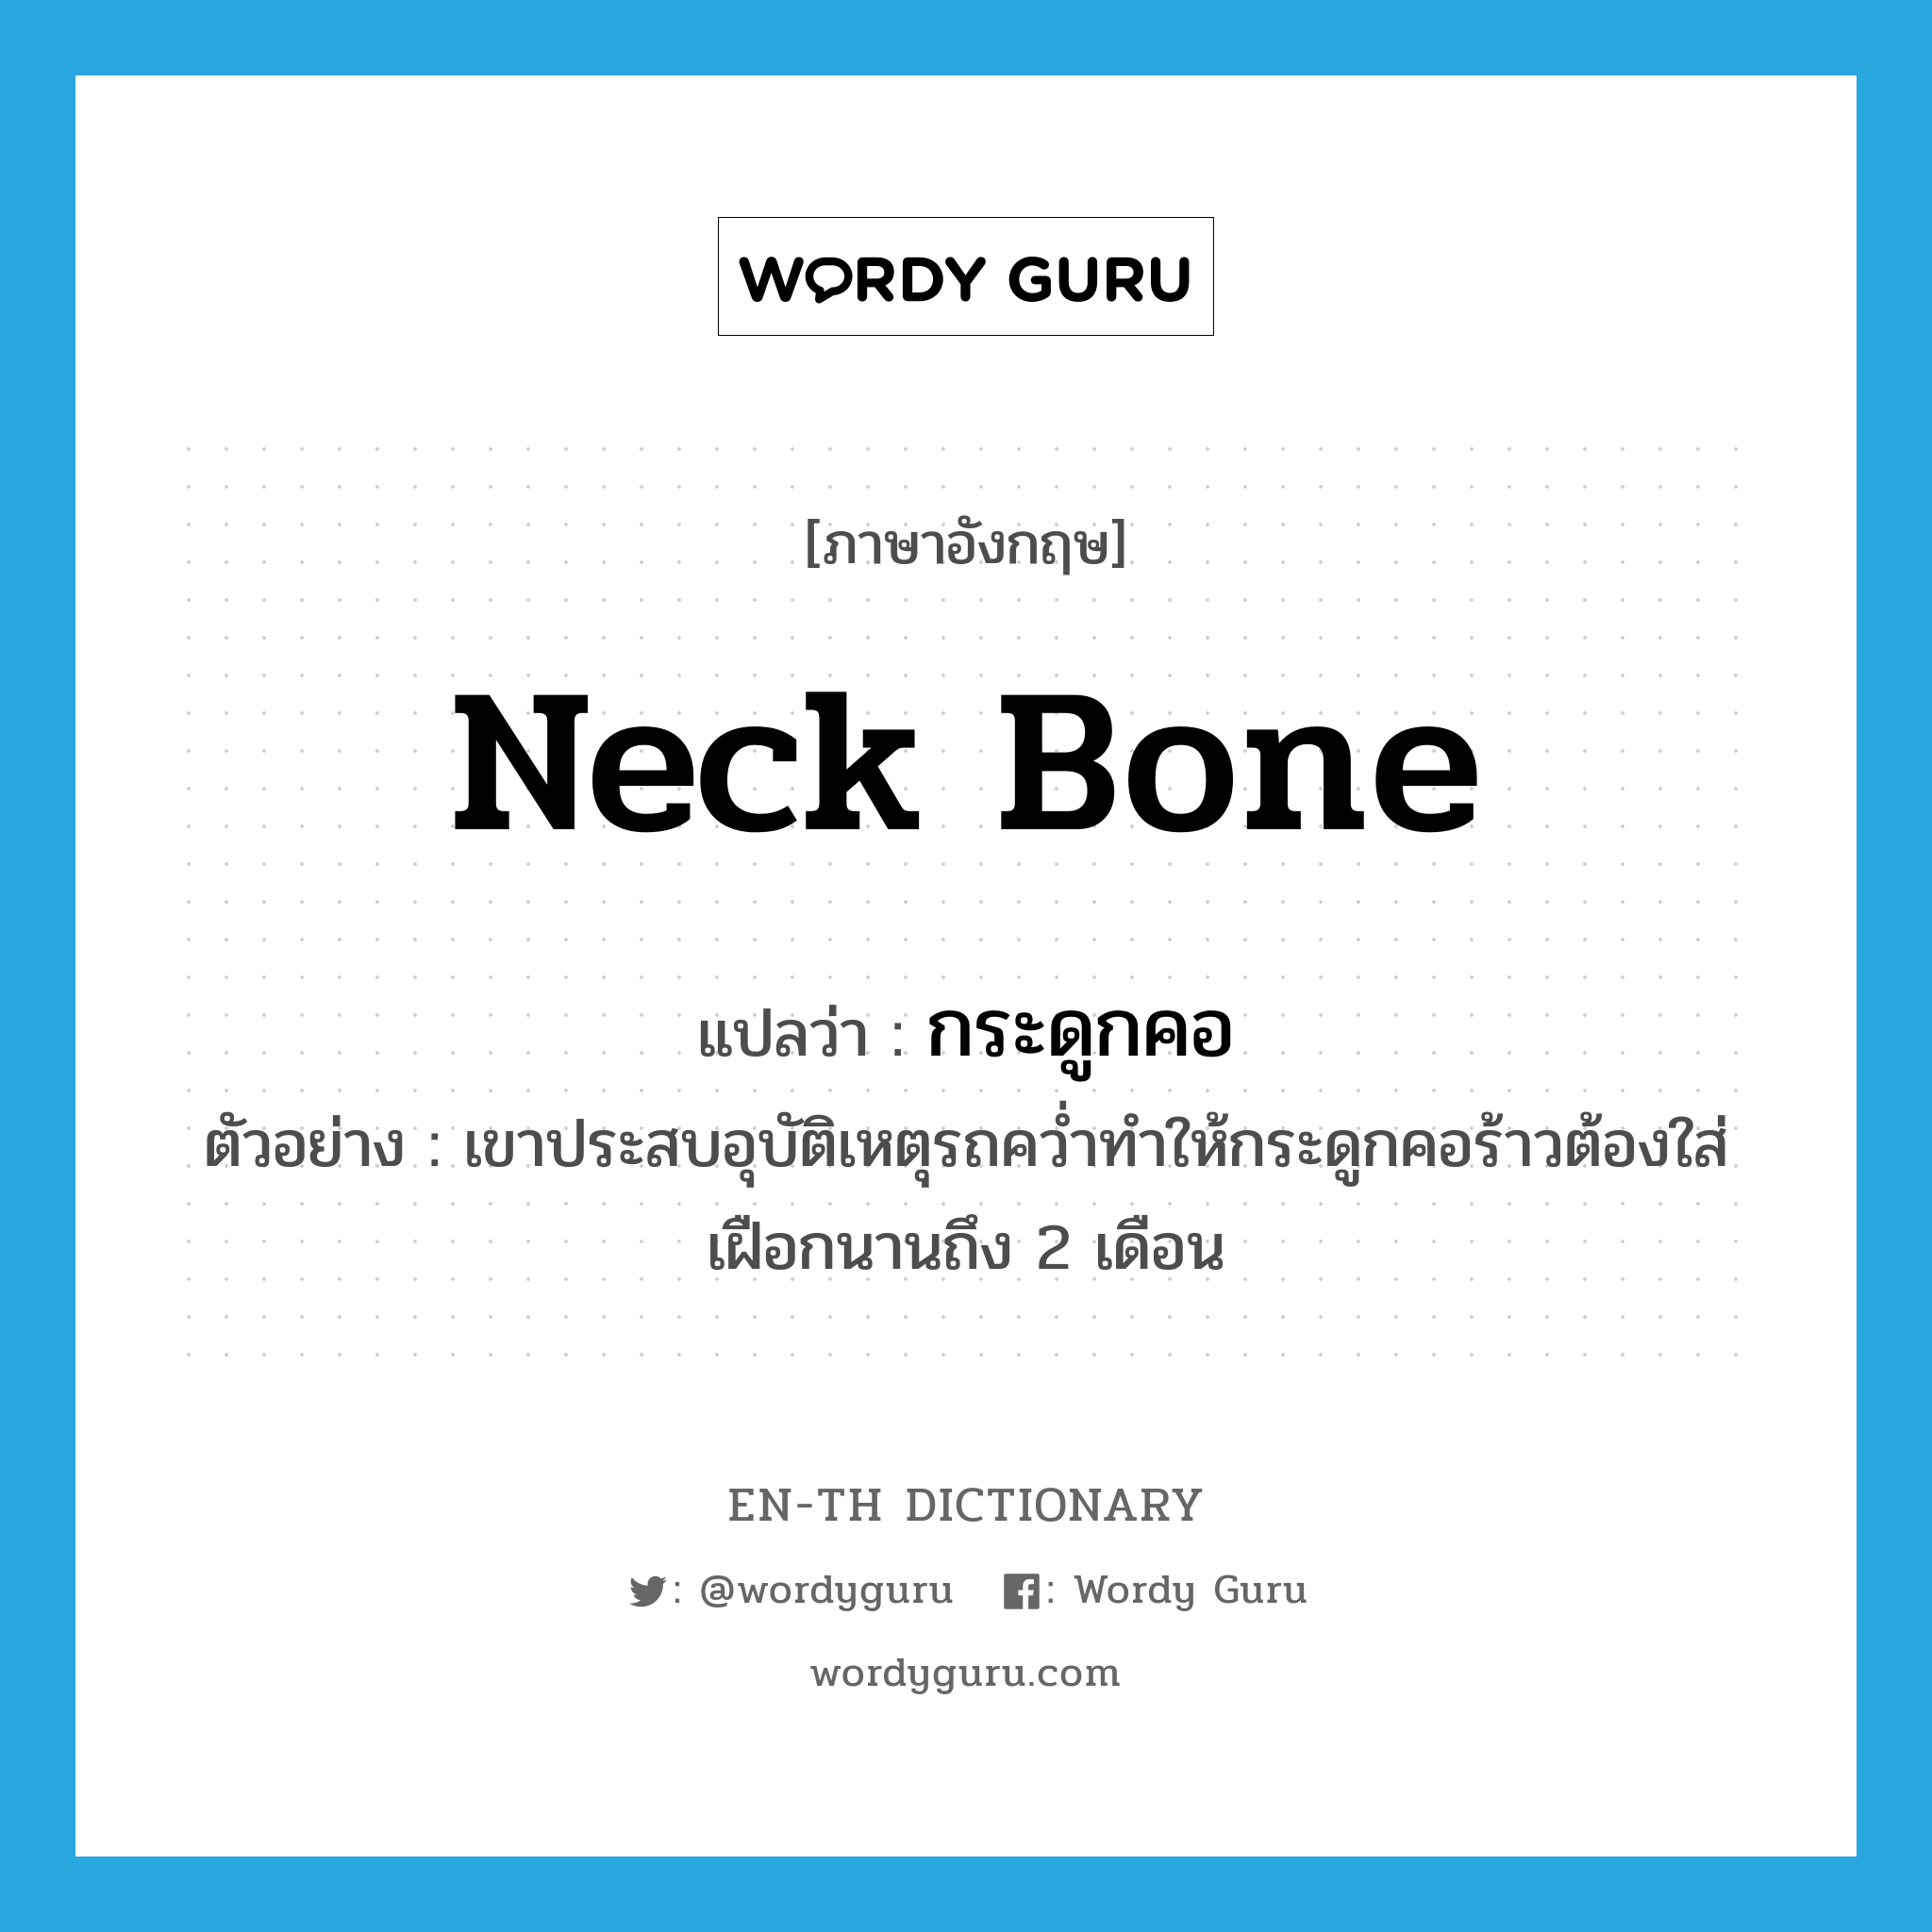 neck bone แปลว่า?, คำศัพท์ภาษาอังกฤษ neck bone แปลว่า กระดูกคอ ประเภท N ตัวอย่าง เขาประสบอุบัติเหตุรถคว่ำทำให้กระดูกคอร้าวต้องใส่เฝือกนานถึง 2 เดือน หมวด N